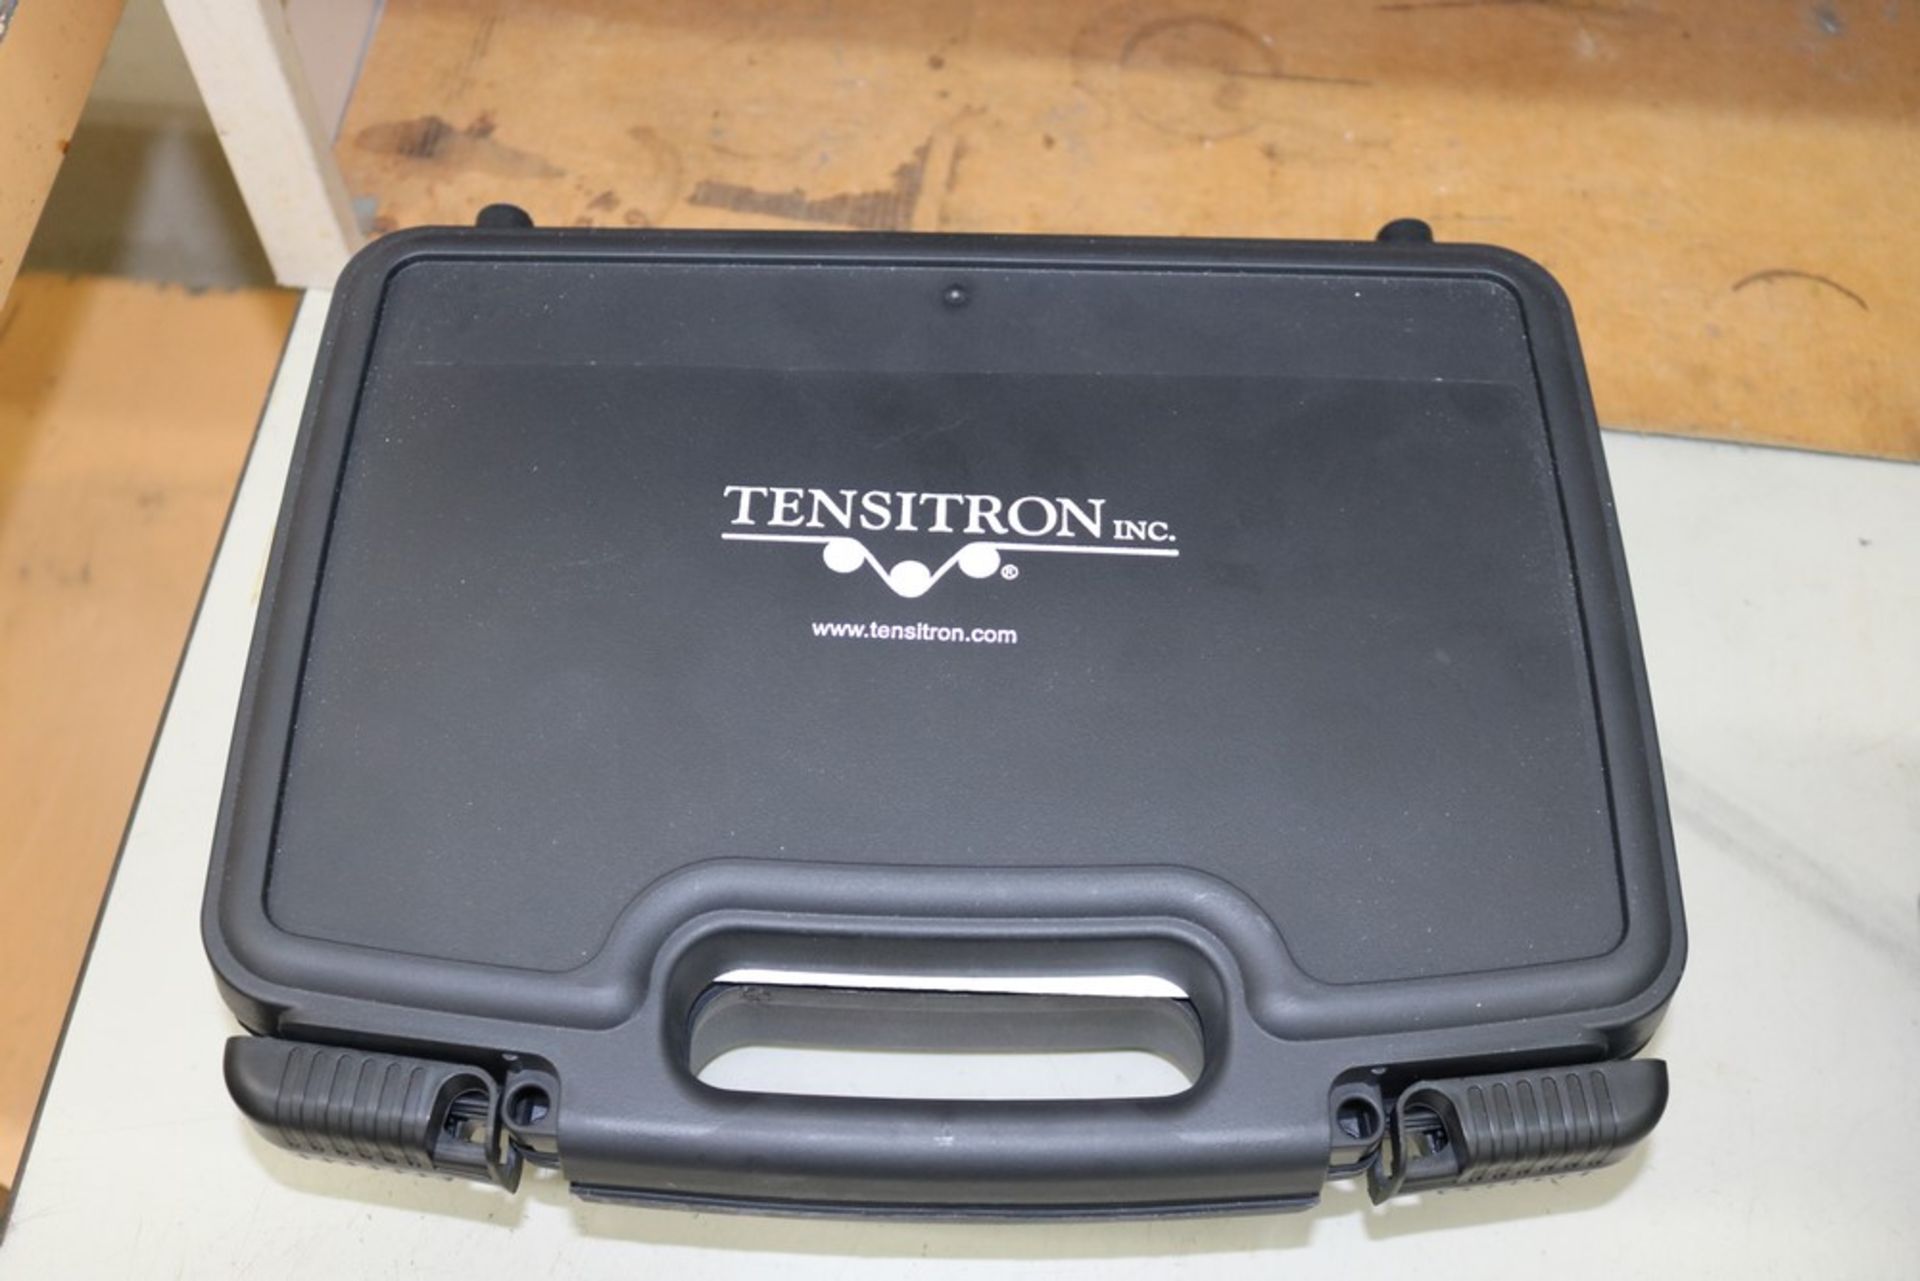 Tensitron, Model TX-Series Digital Tension Meter